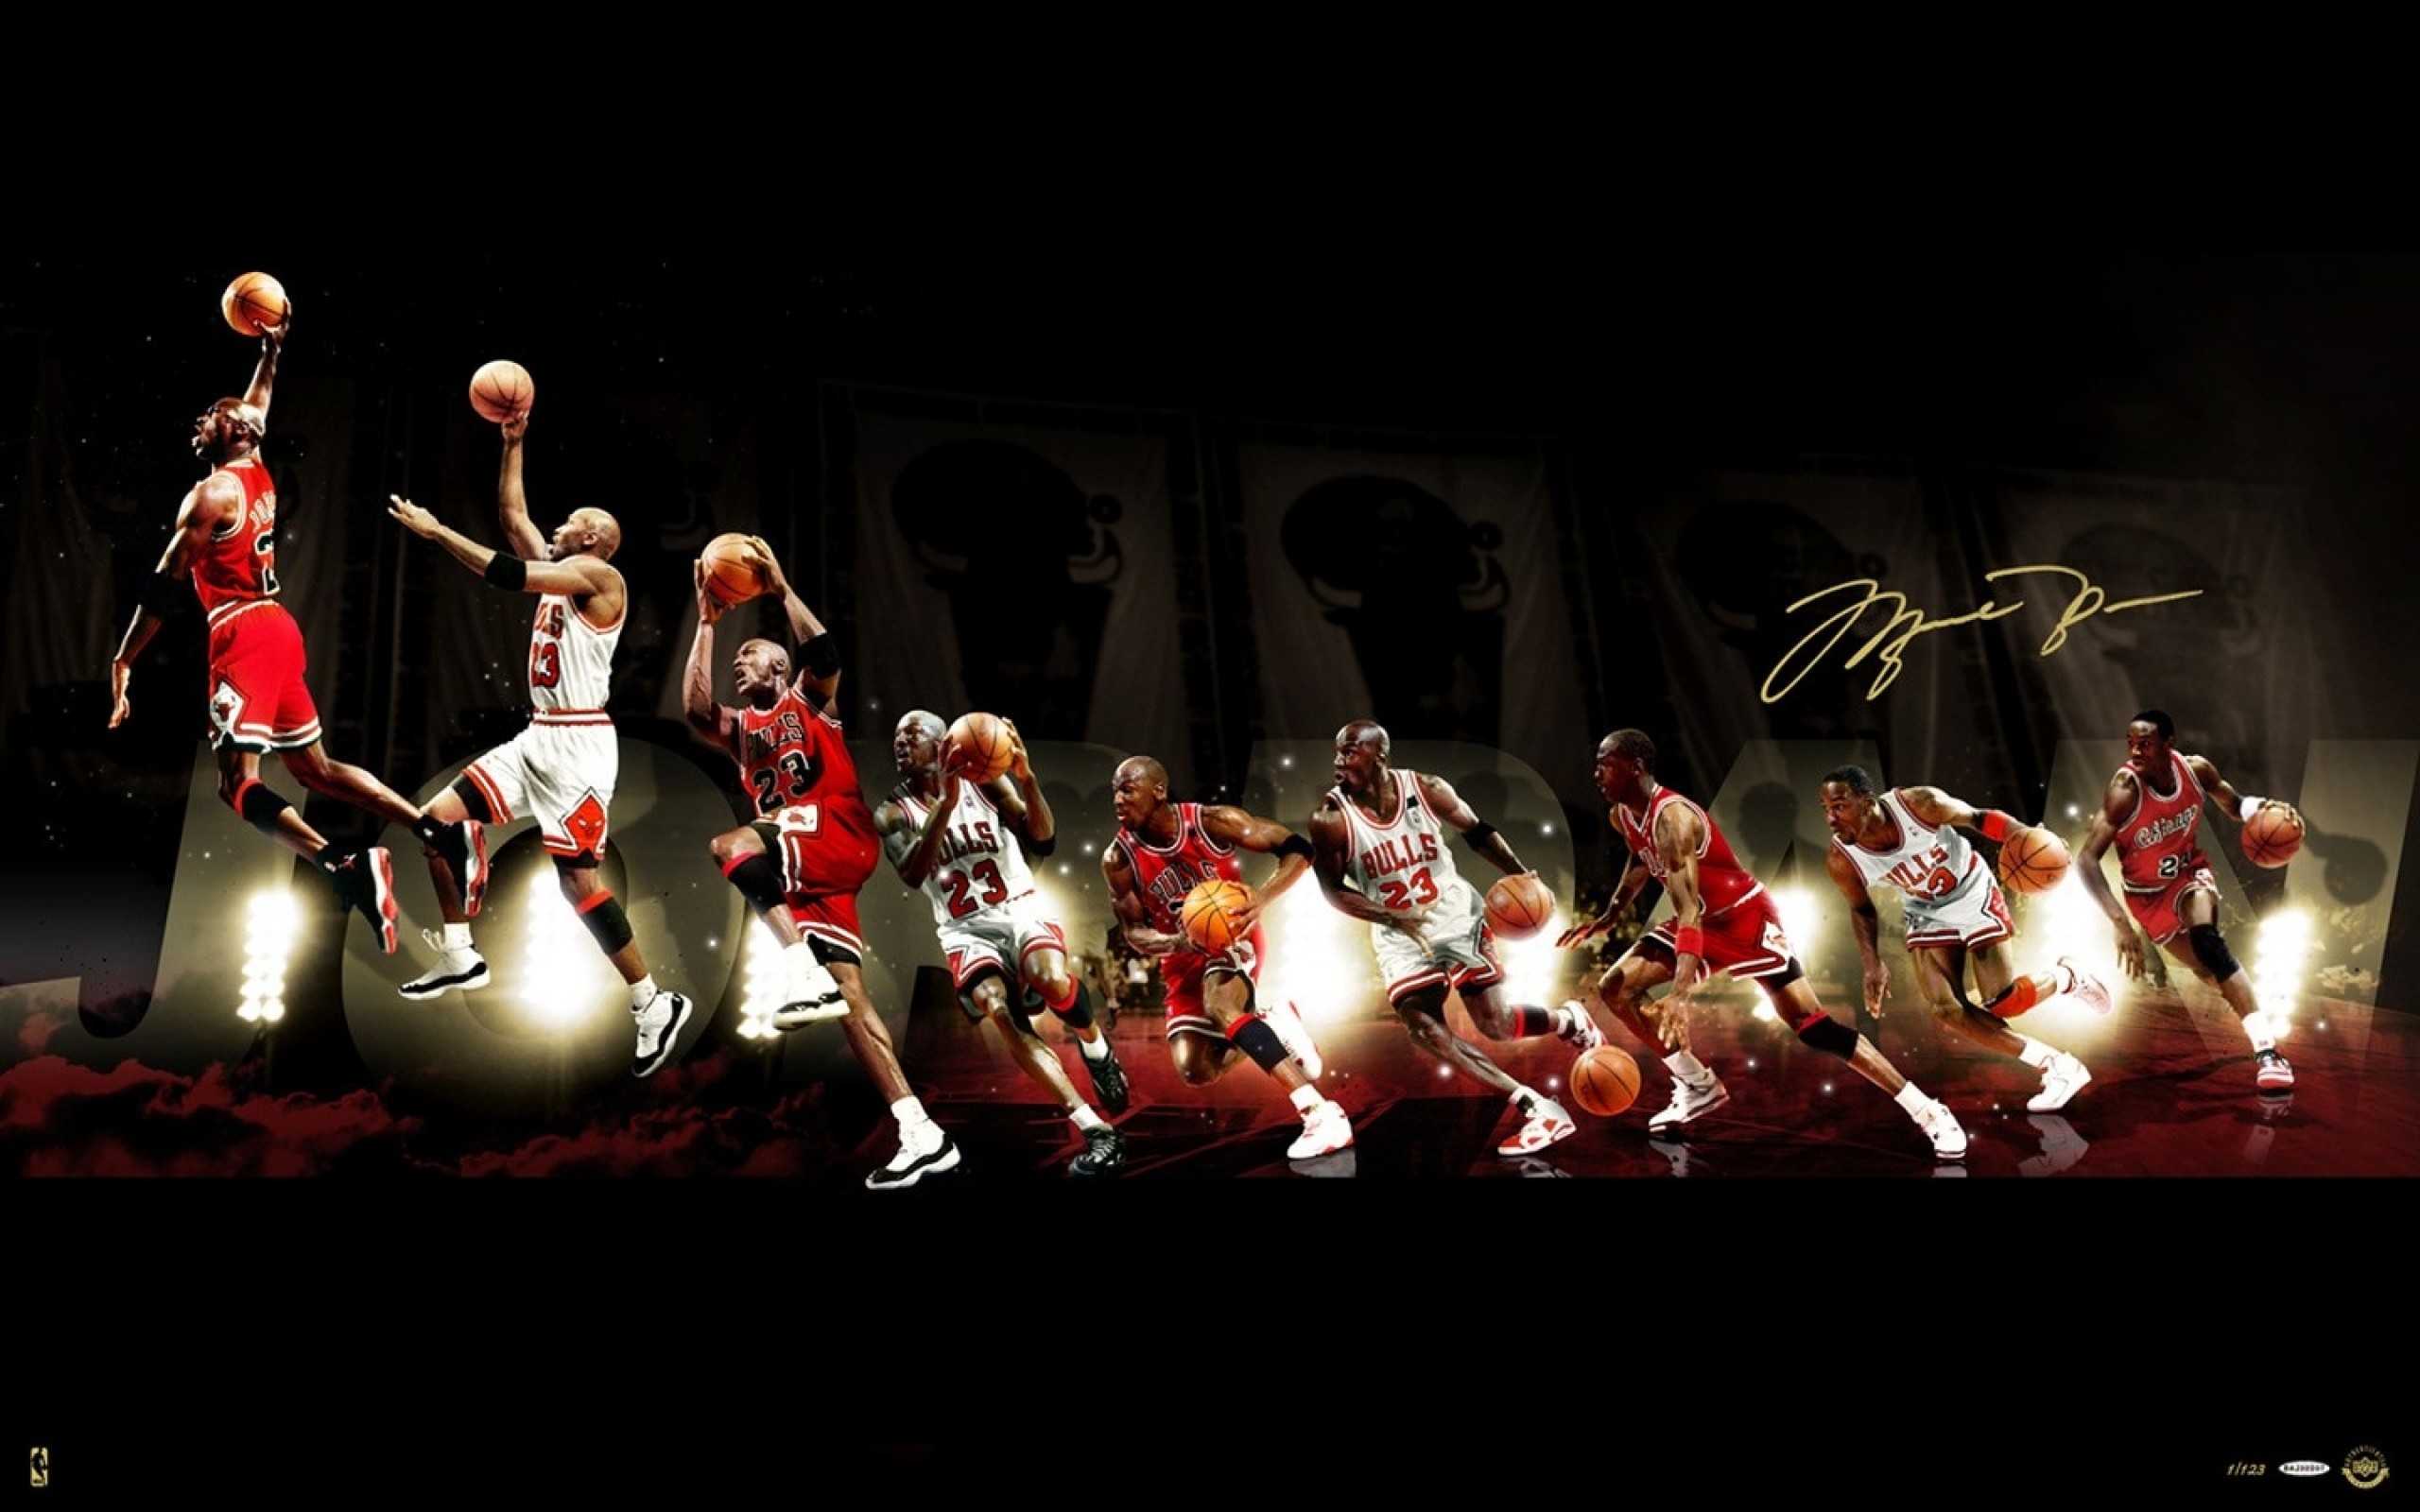 2560x1600 Michael Jordan HD Wallpaper | Hintergrund |  | ID:373780 -  Wallpaper Abyss